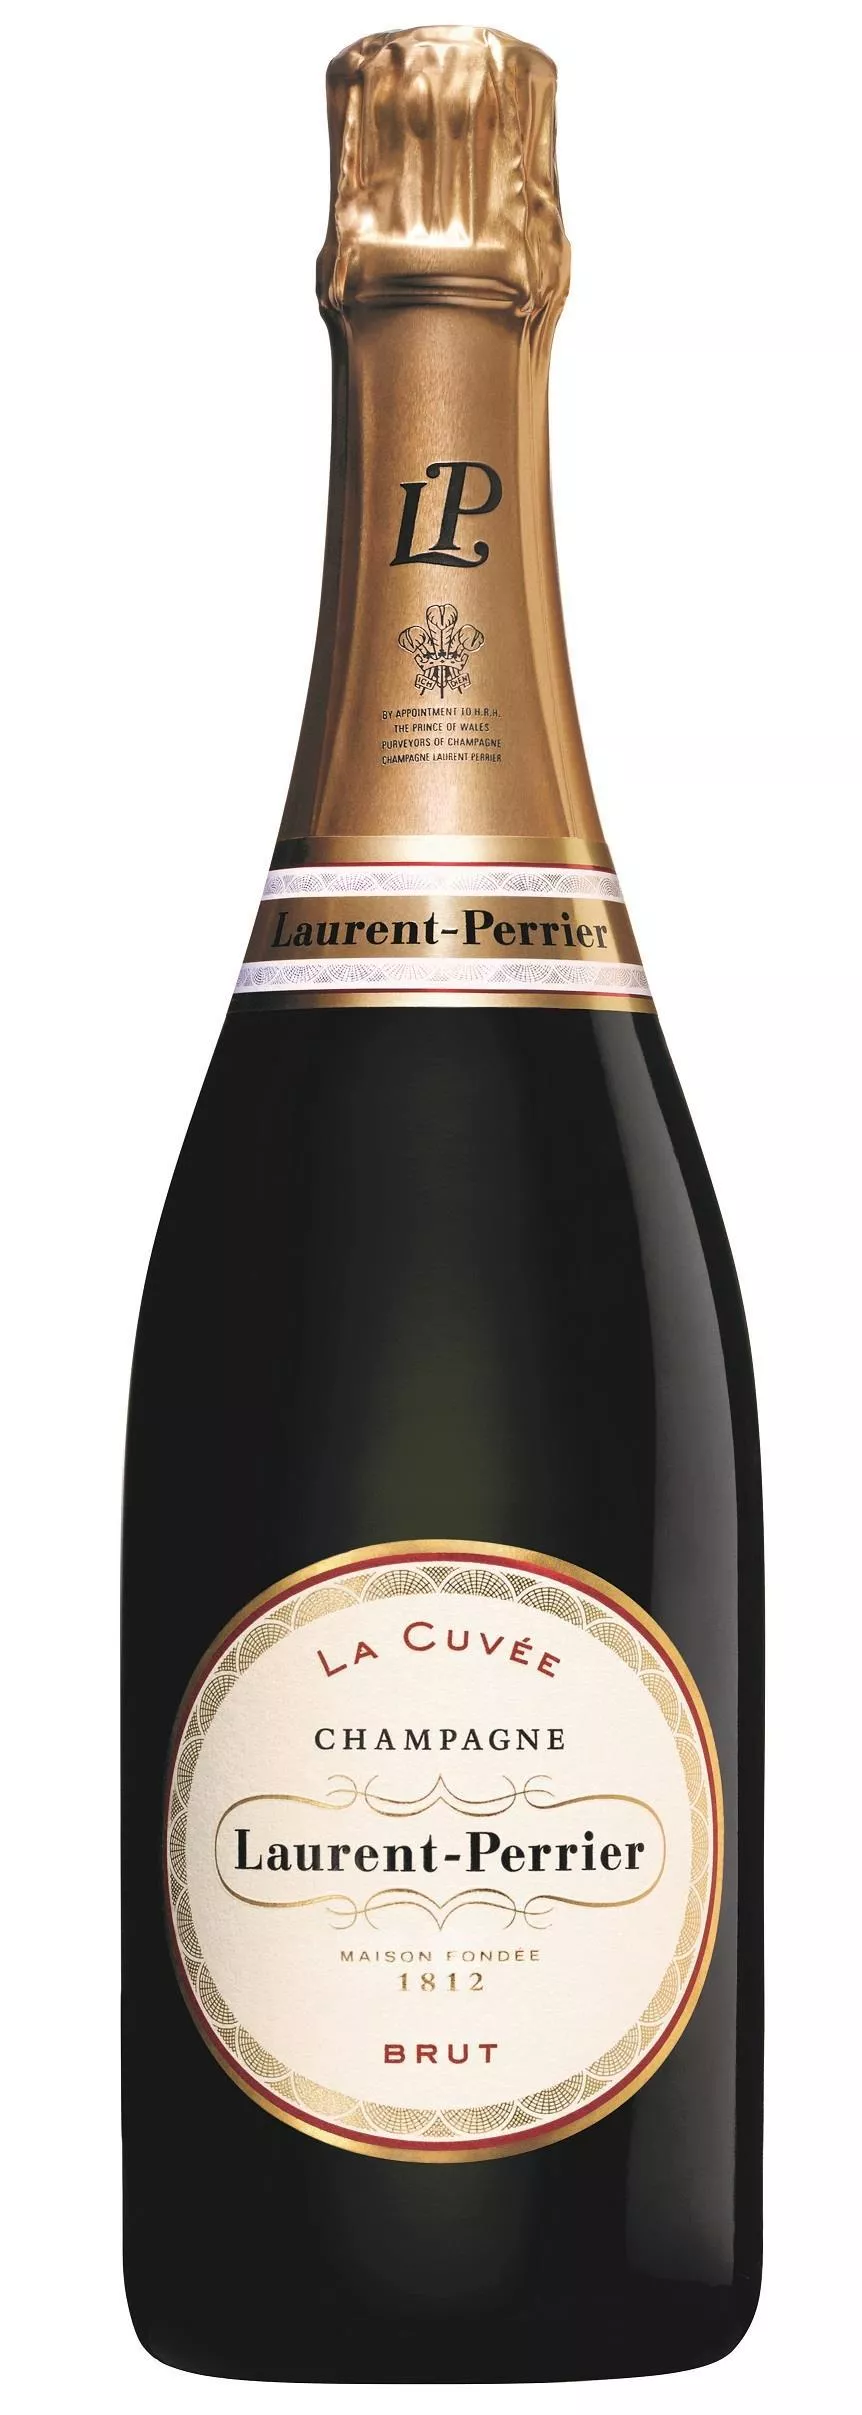 Champagner Laurent-Perrier La Cuvée Brut 0,375 Liter